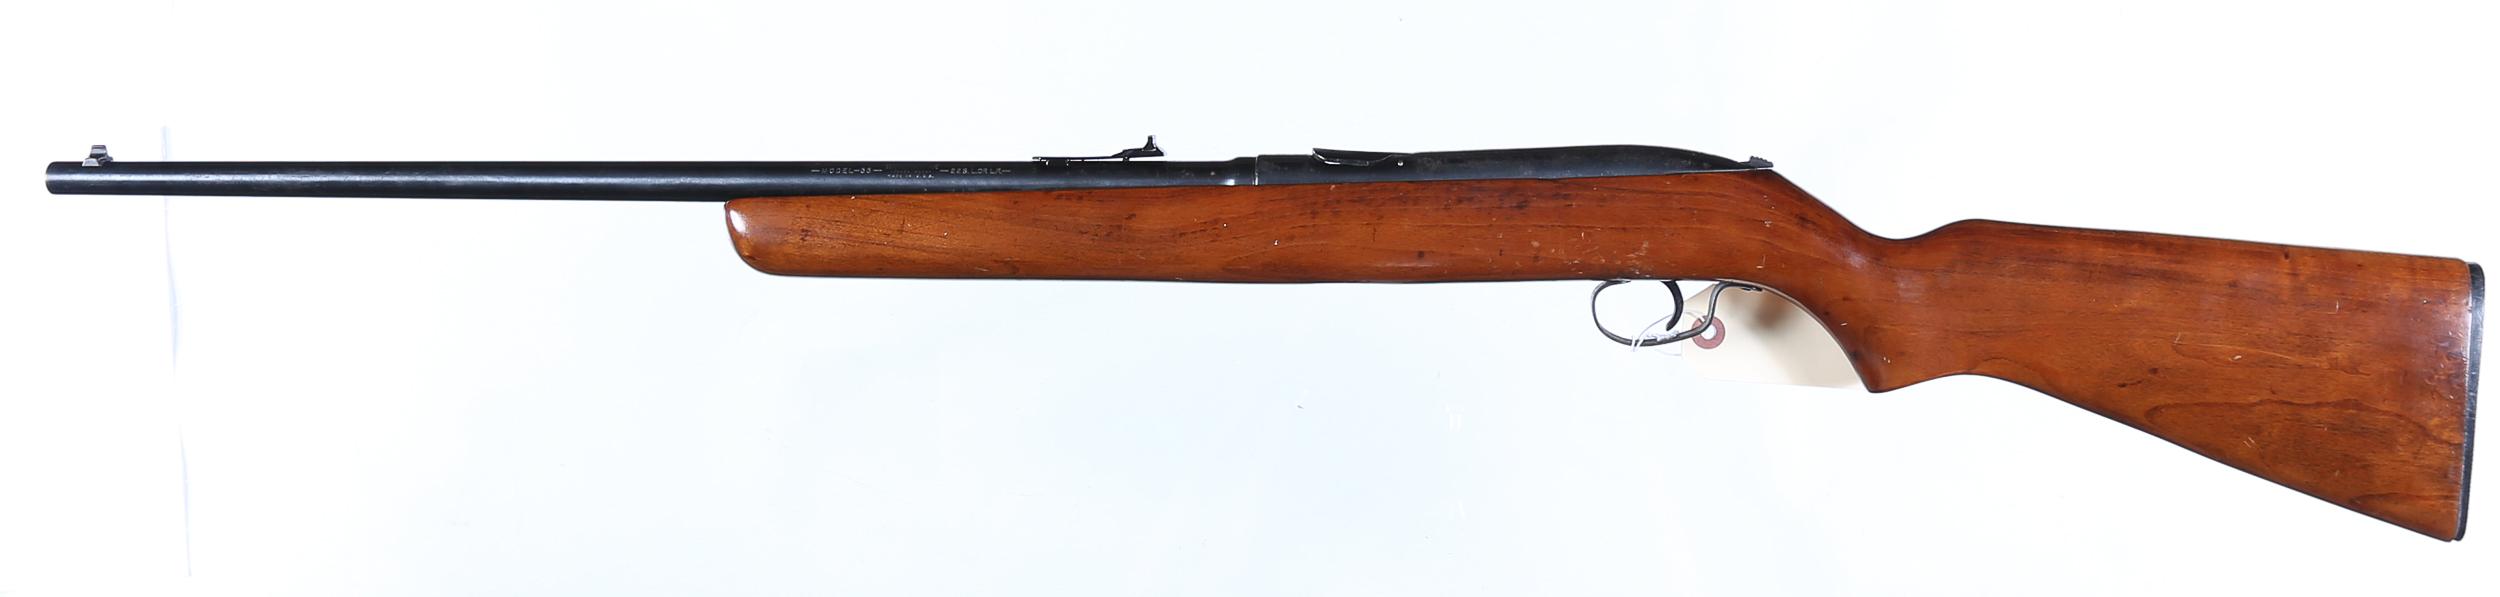 Winchester 55 Semi Rifle .22sllr